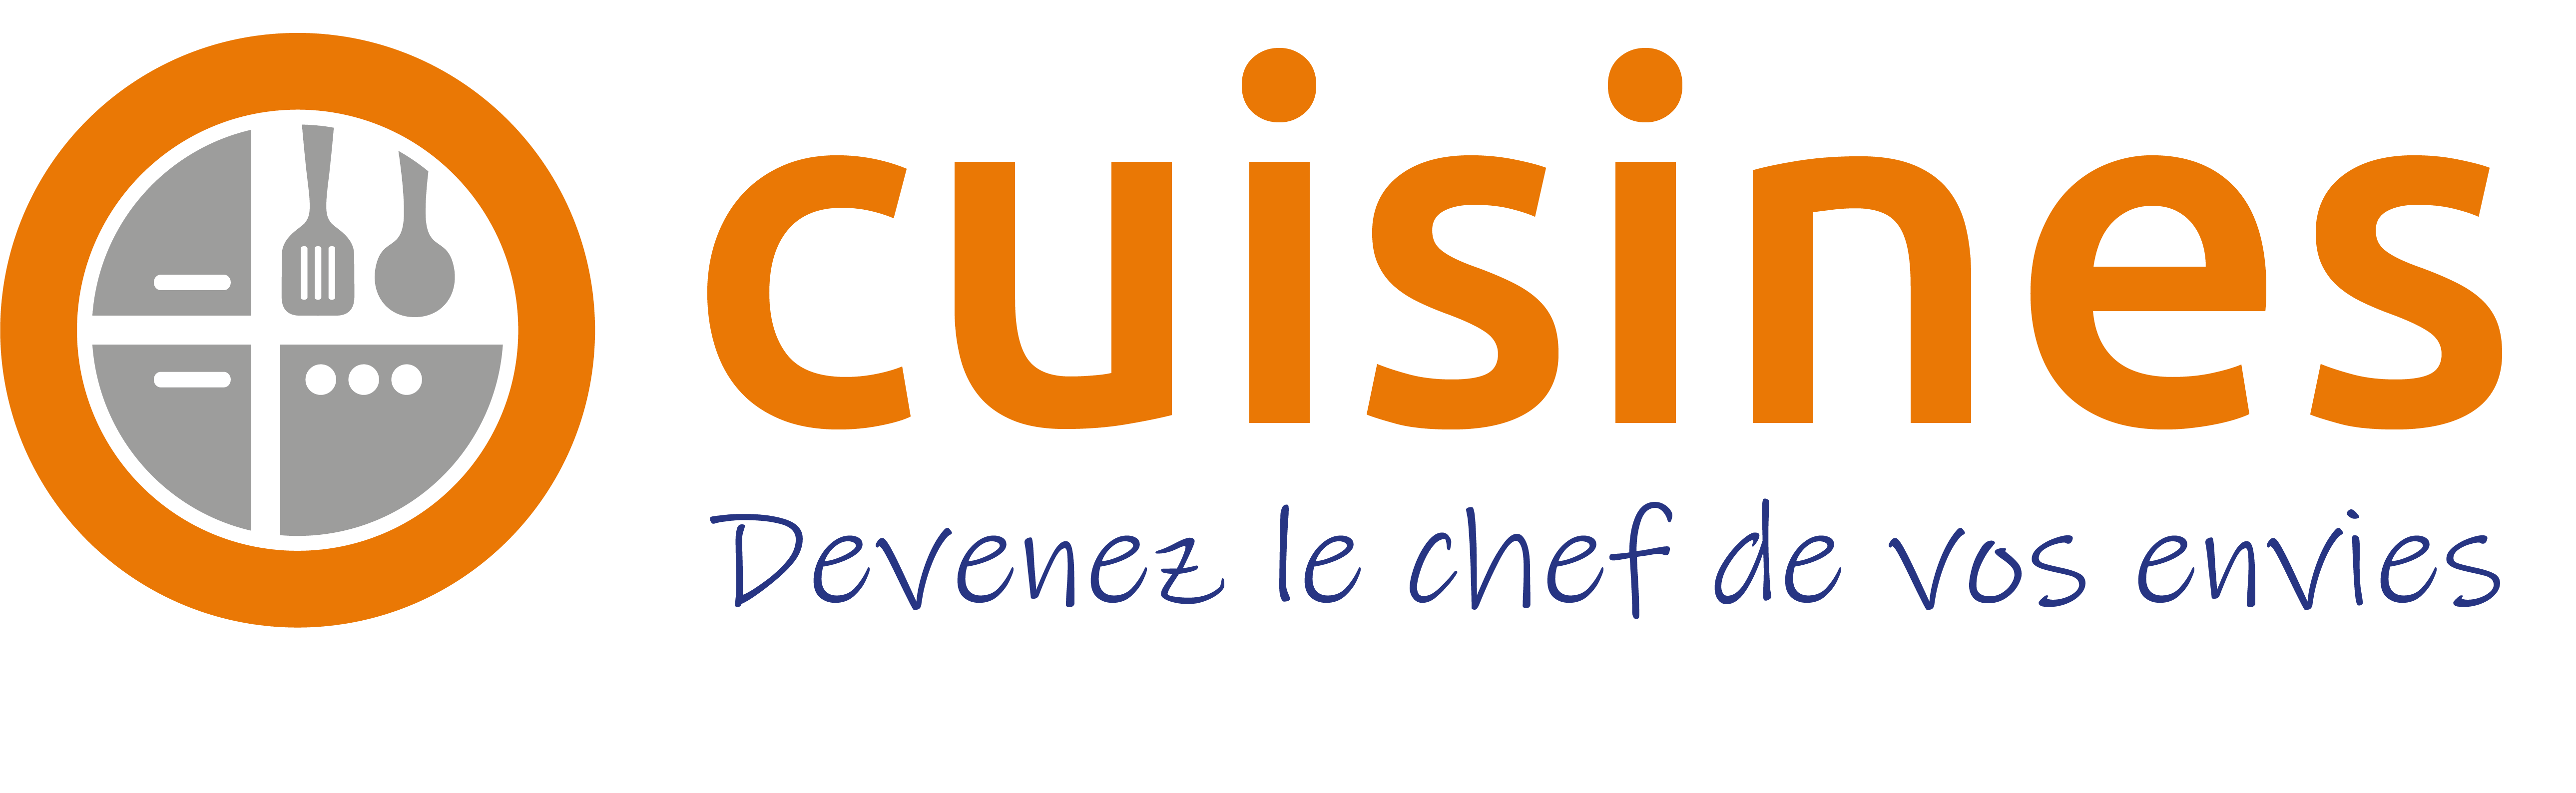 logo-brico-cuisines